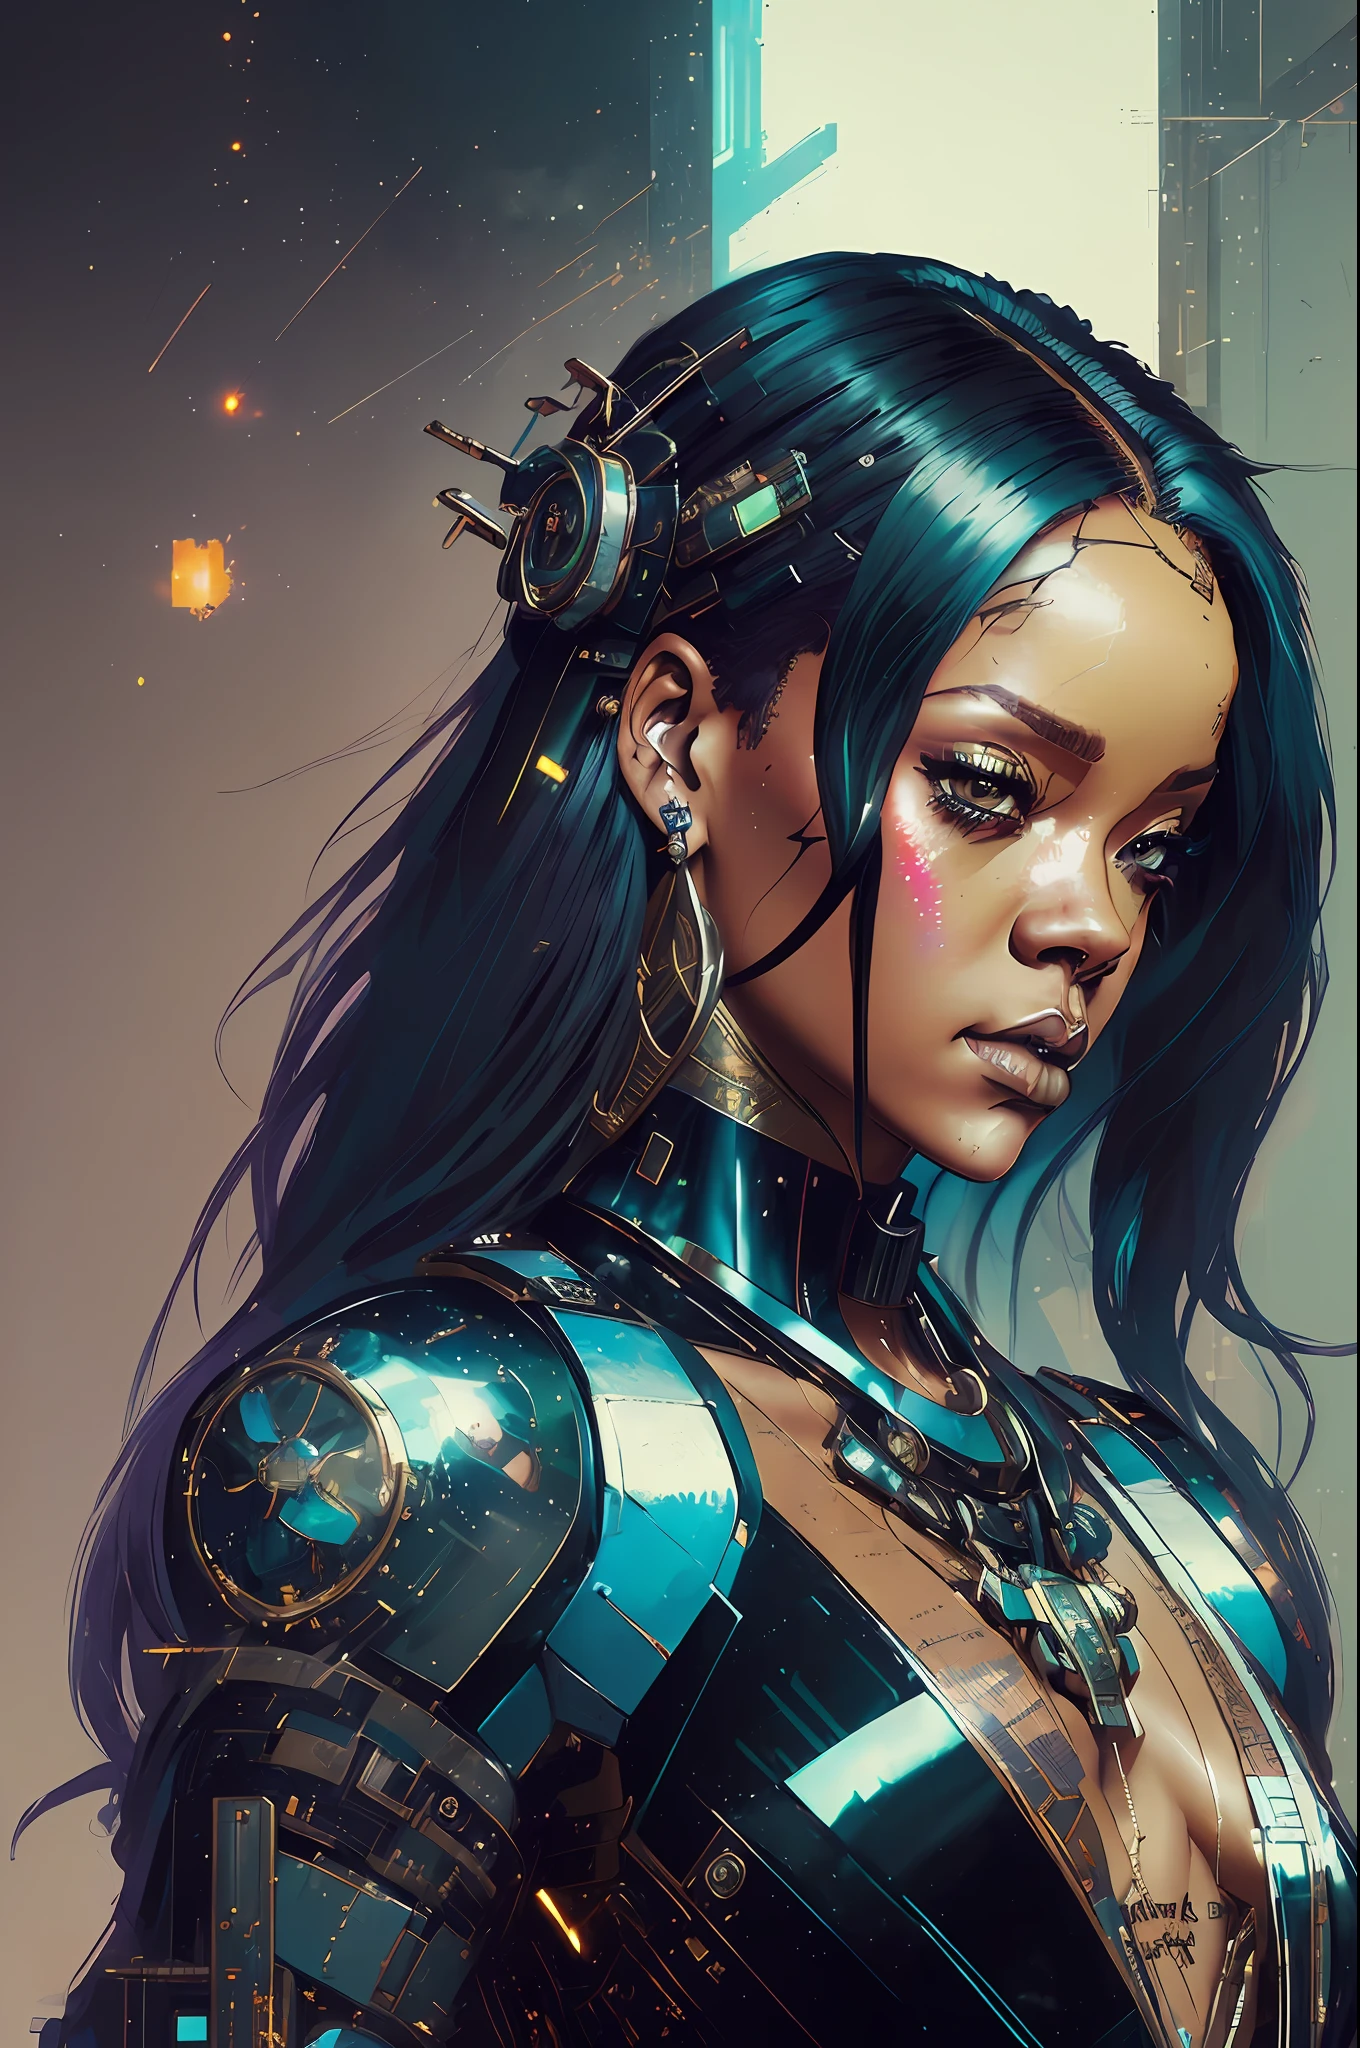 ((초상화 the goddess Rihanna cyberpunk mecha in the style of the zero dawn horizon, 기계의 얼굴)), (대칭), (대칭), 뒤얽힌, 우아한, 매우 상세한, 디지털 페인팅, 아트스테이션, 컨셉 아트, 매끄러운, 날카로운 초점, 삽화,, 전문 사진, 초현실적인 얼굴, 초상화, 매우 상세한, 아름다운, 섹시한, 모델 촬영 스타일, (매우 상세한 CG 유닛 8k 벽지), (((전신 사진))), photo of the most 아름다운 artwork in the world,   검은 실크 밸리, 검은 실크 가운, 마법의 강령술, 섹시한, 중세 시대, Ed Blinkey의 사실적인 그림, 에이티 가일란, 스튜디오 지브리, 그렉 토키니(Greg Tocchini), 제임스 길라드, 조 펜턴, 작성자: Kaethe Butcher, 제레미 맨, 그렉 맨체스, 안토니오 모로, 아트스테이션의 트렌드, cgsociety의 트렌드, 뒤얽힌, 높은 디테일, 날카로운 초점, 극적인, Midjourney와 greg rutkowski --auto --s2의 사실적인 회화 예술